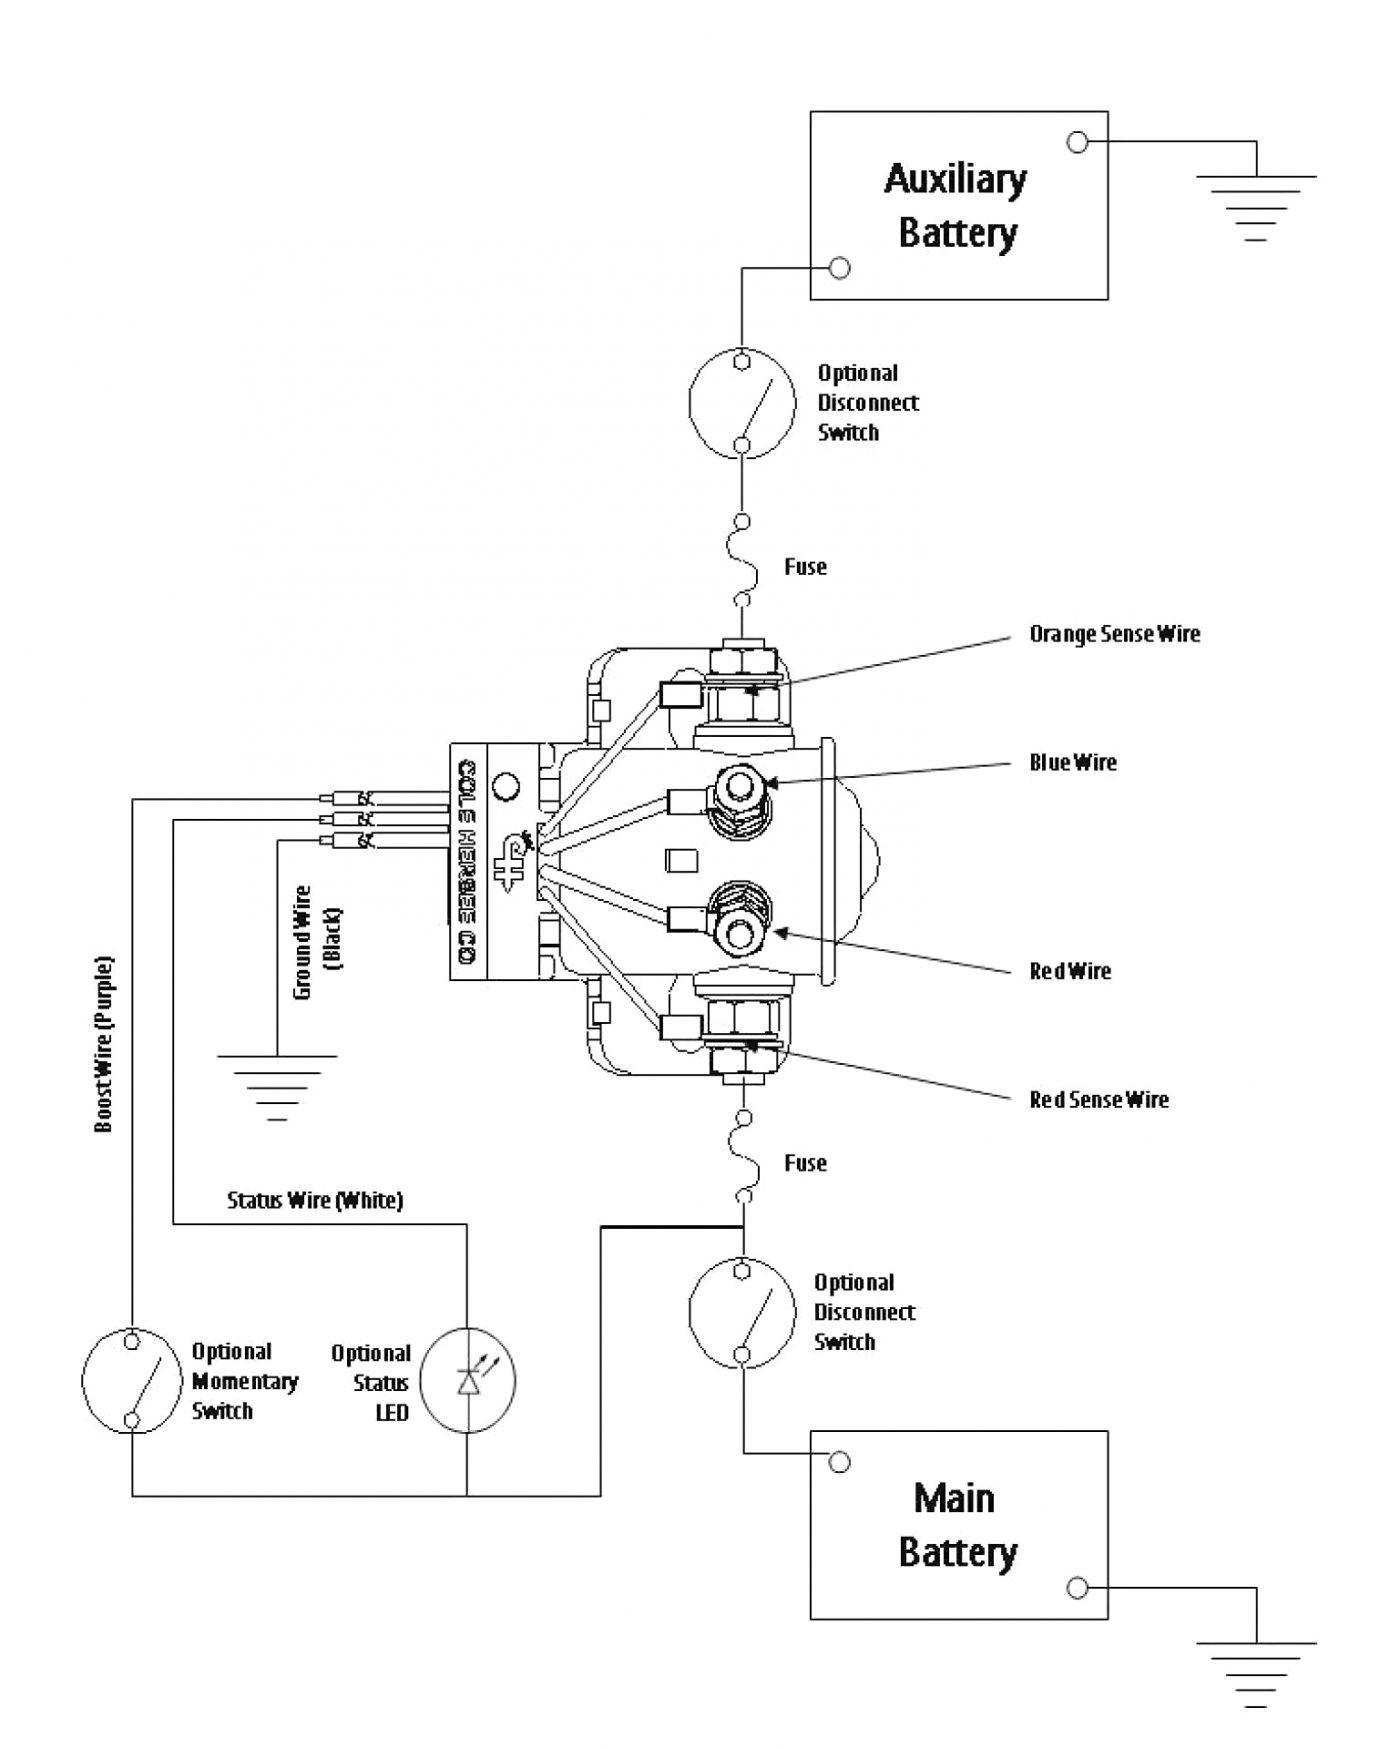 Wiring Diagram for Mallard Motorhome Fresh Rv Battery Diagram House Wiring Diagram Symbols •